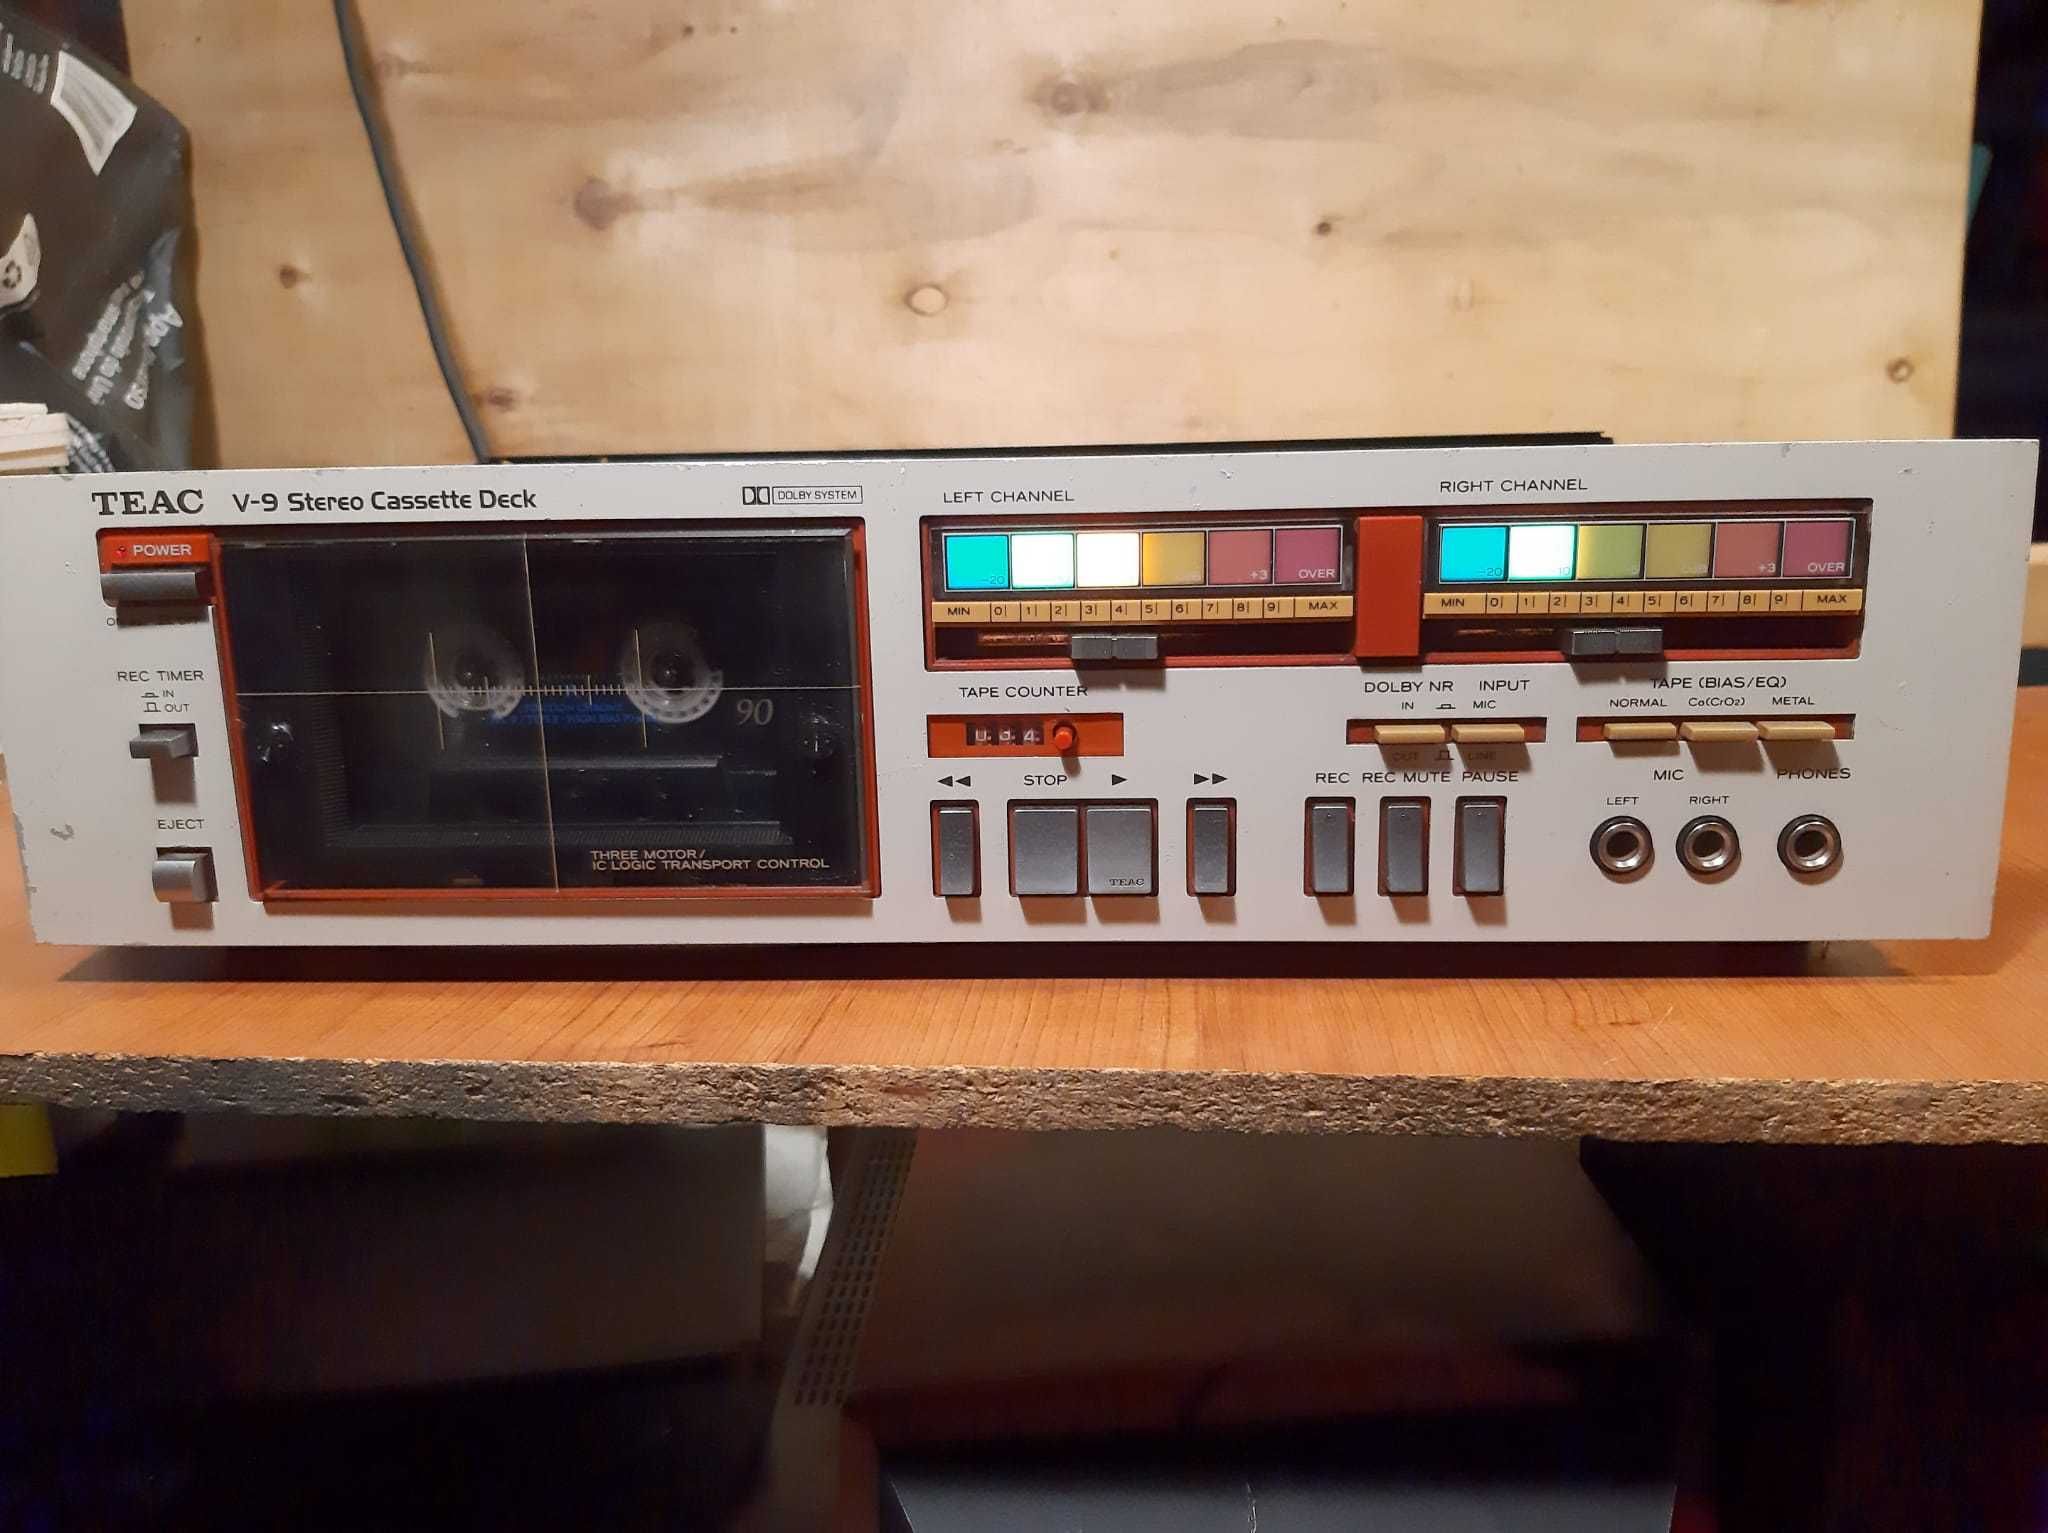 TEAC V-9 Stereo Cassette Deck (1981)